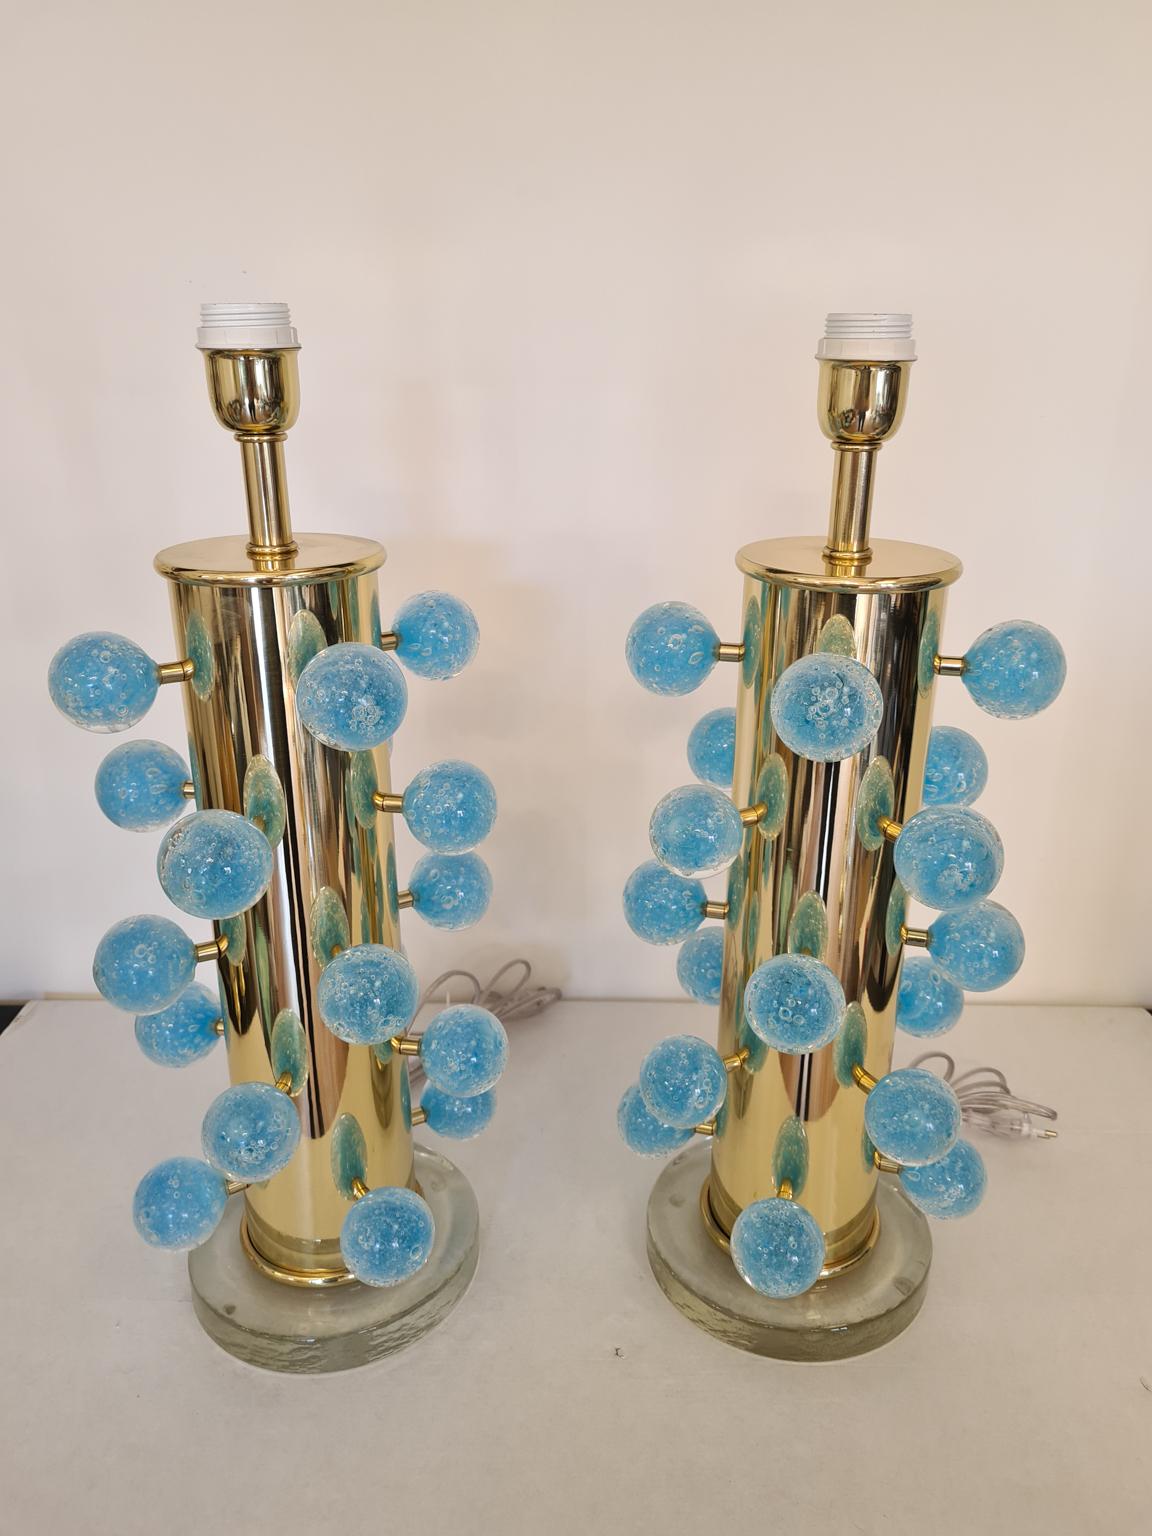 Paire exclusive de lampes de table en verre de Murano avec des sphères aigue-marine Pulegoso, une base en cristal transparent et un cadre en chrome doré. 
Pulegoso traitement sont des bulles à l'intérieur de la couleur.
Lampe fabriquée avec